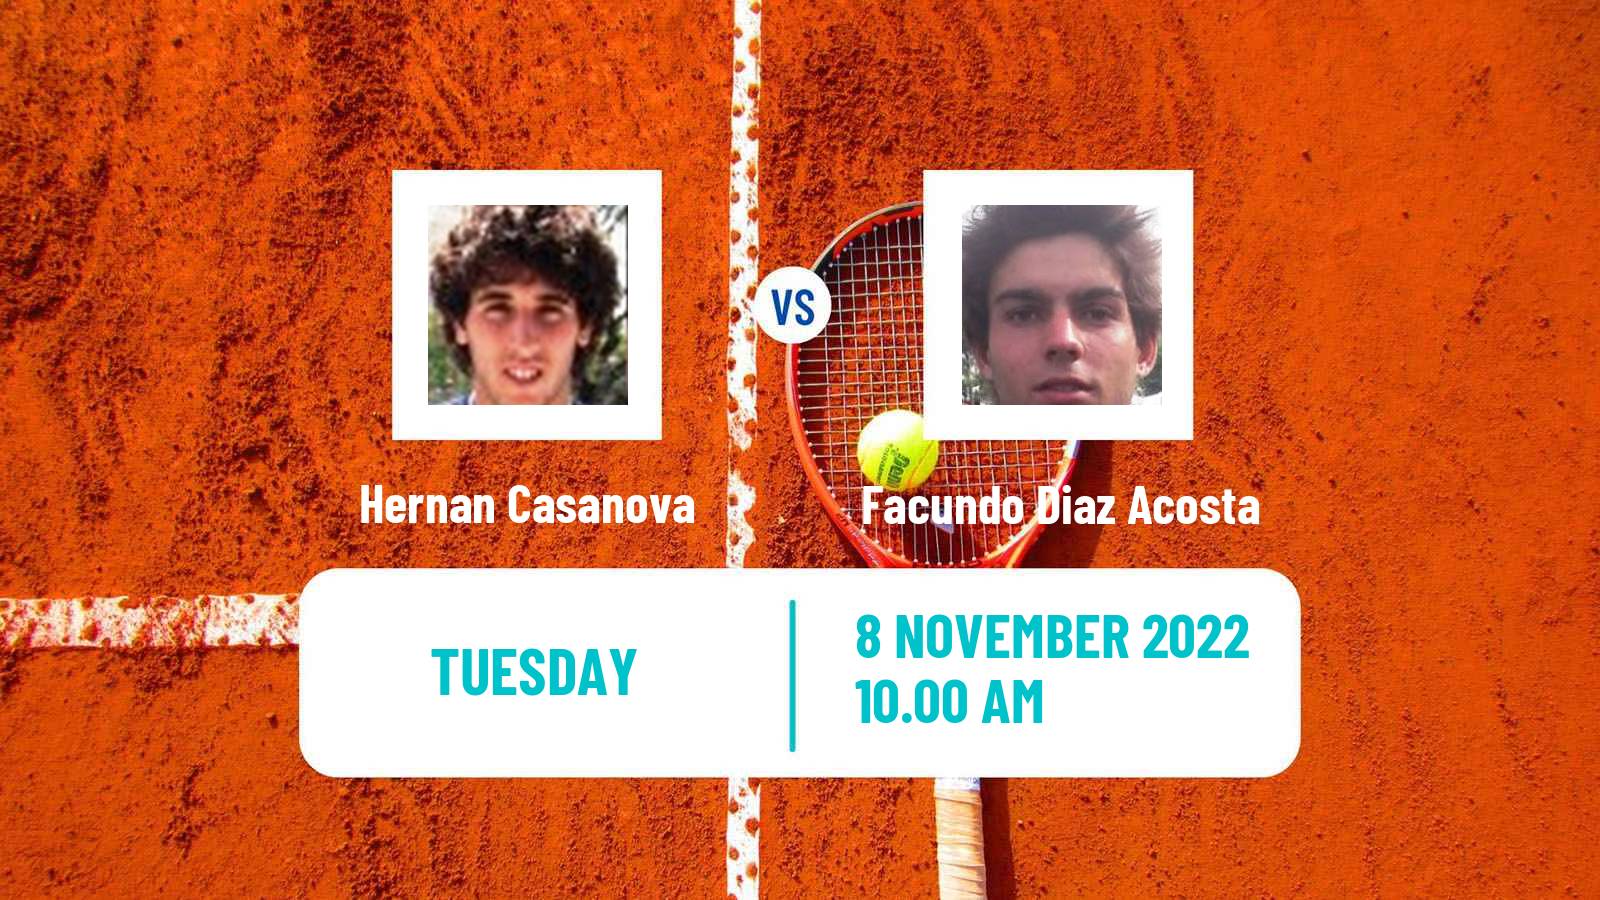 Tennis ATP Challenger Hernan Casanova - Facundo Diaz Acosta